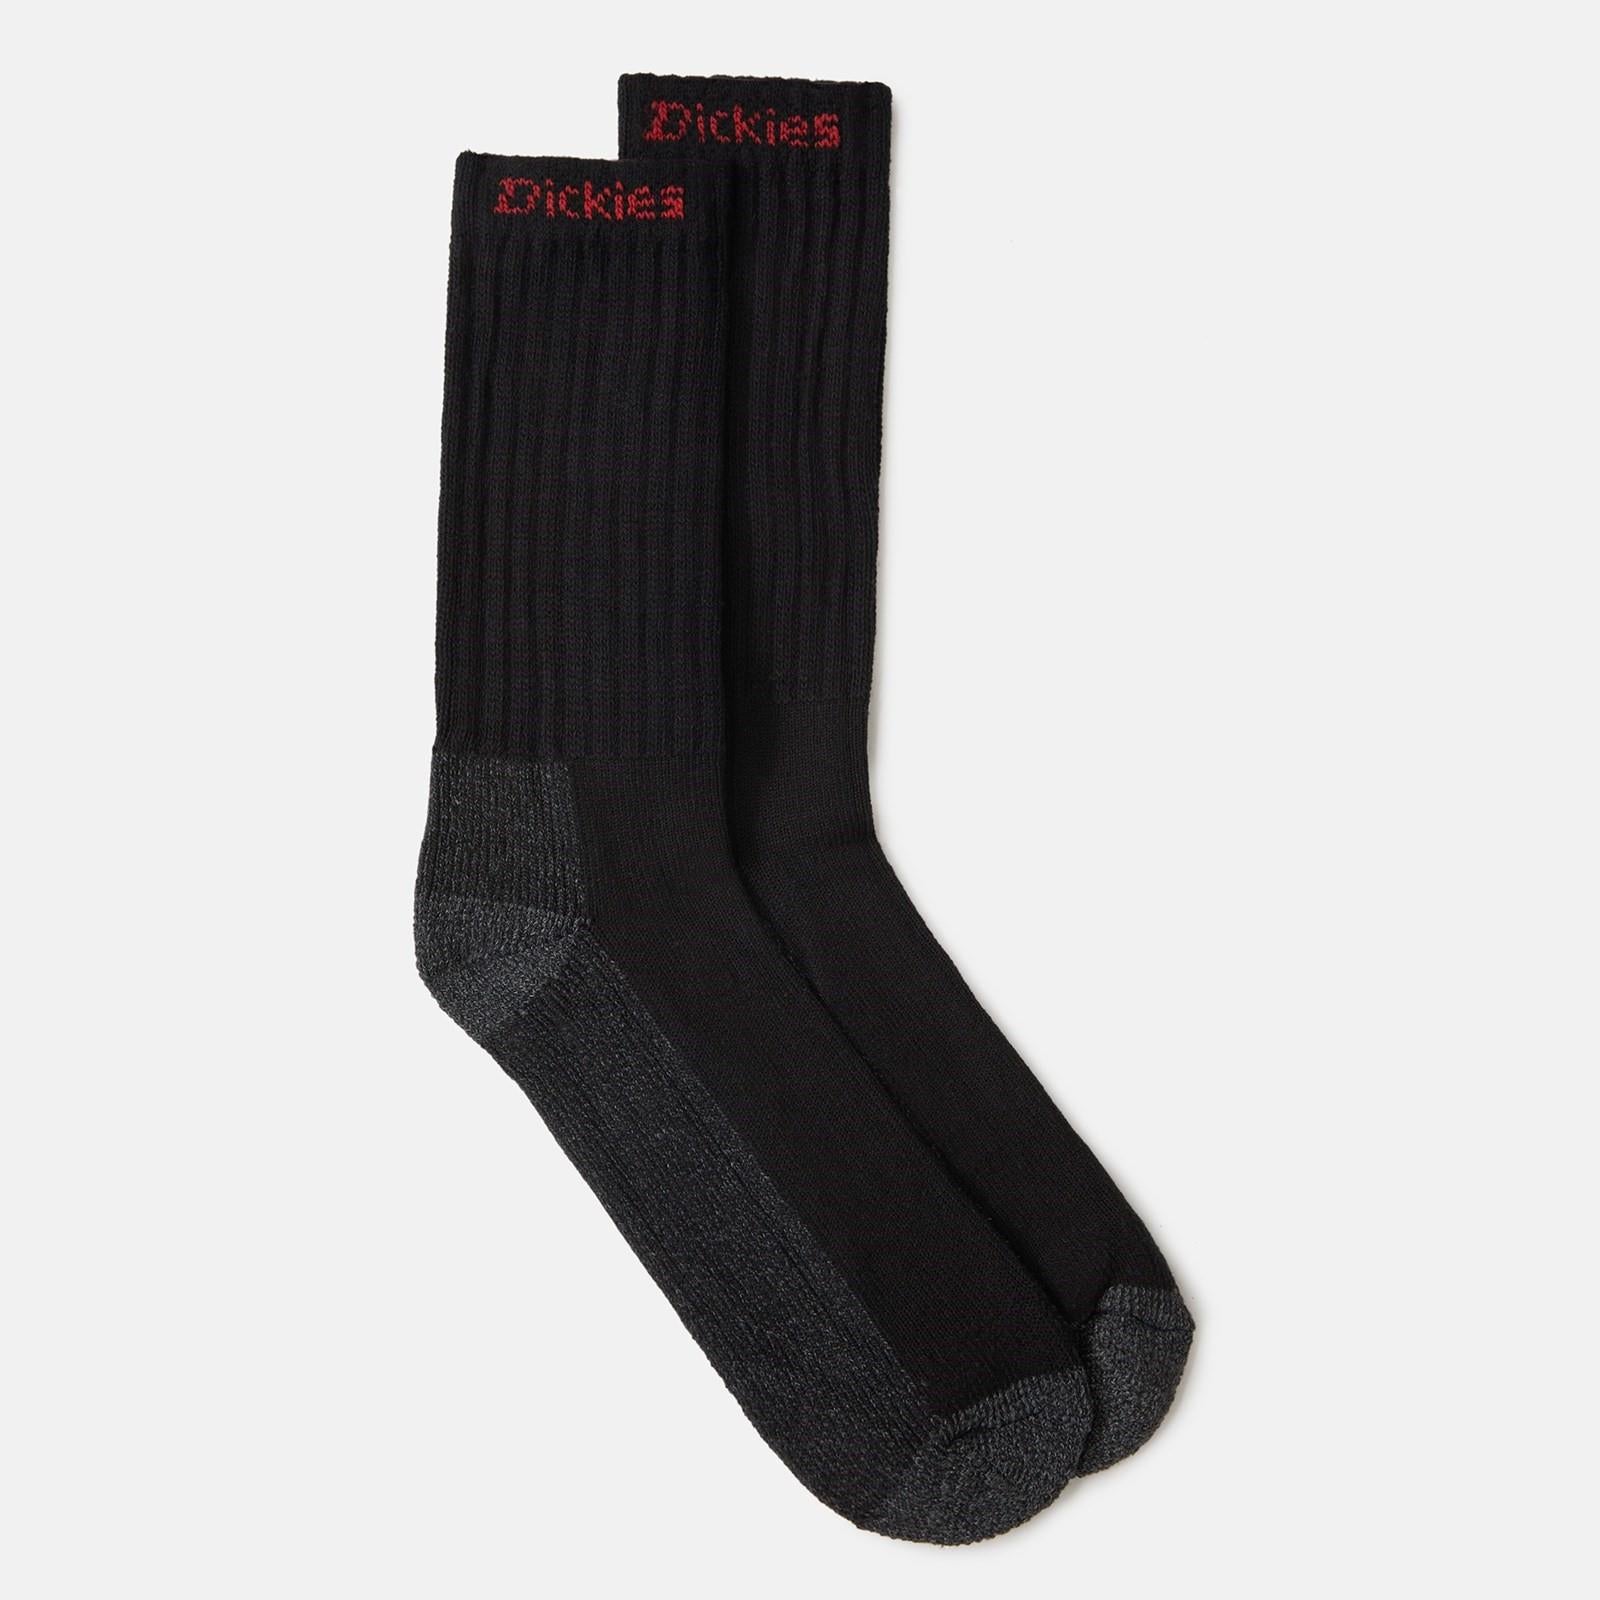 Dickies Industrial men's work socks (2 pair pack)